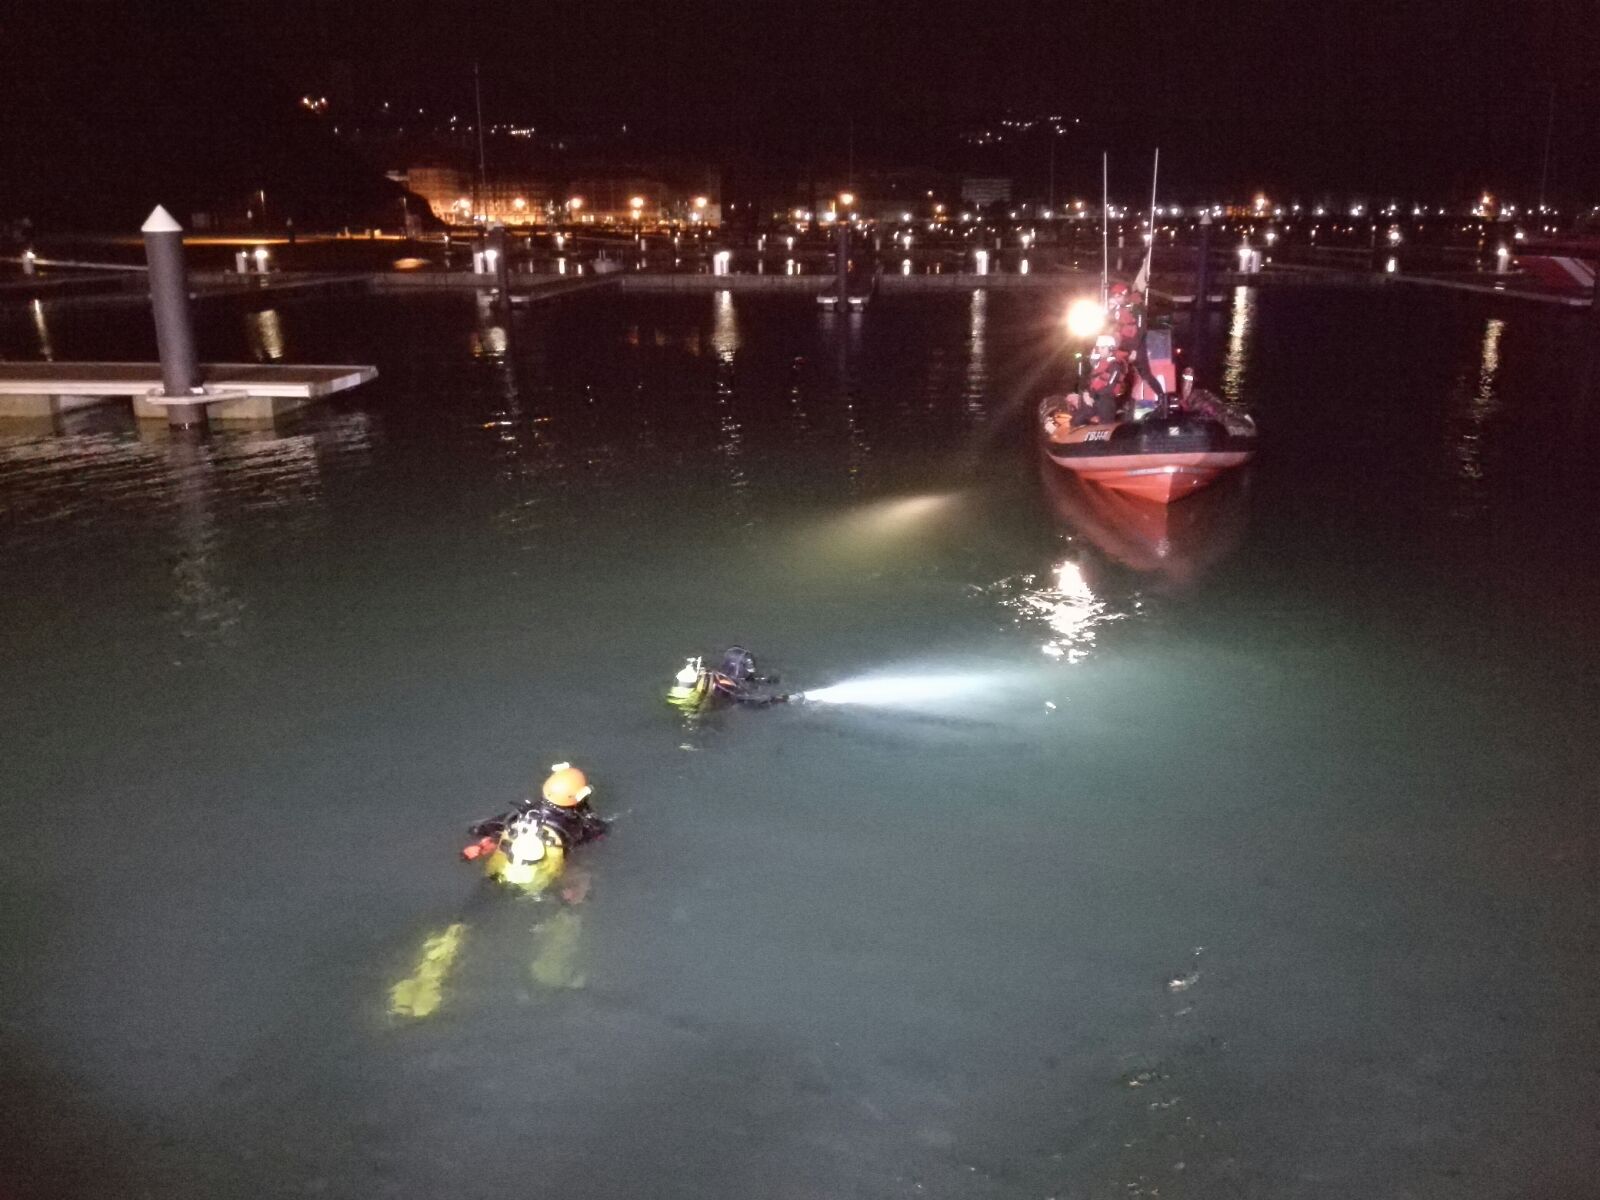  Fallecen dos jóvenes al caer su coche al mar en el Puerto Deportivo de Laredo